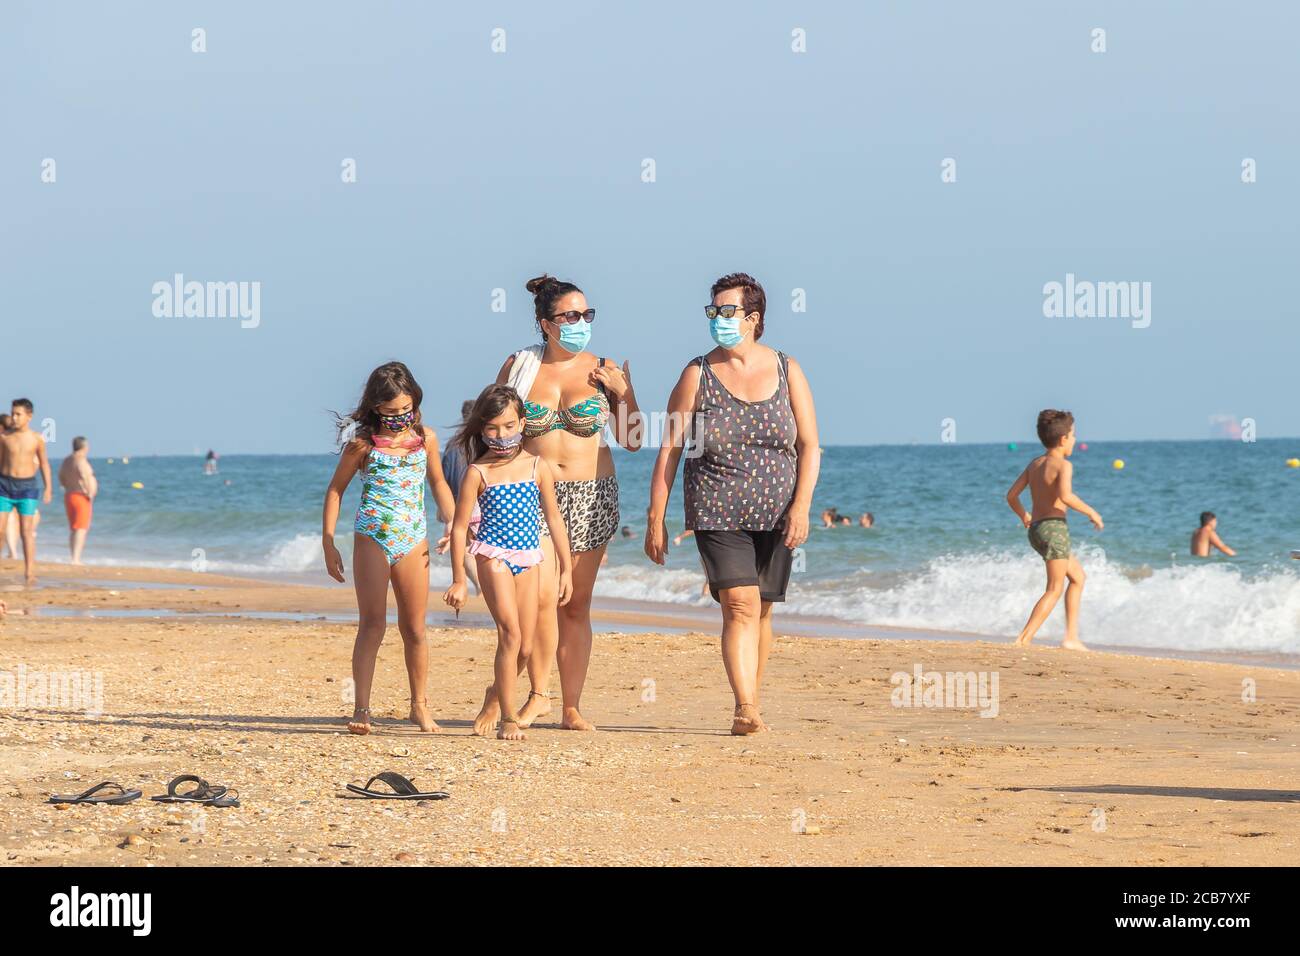 Punta Umbria, Huelva, Spagna - 7 agosto 2020: Passeggiata in famiglia in spiaggia con maschere protettive o mediche. Nuova normalità in Spagna con sociale di Foto Stock